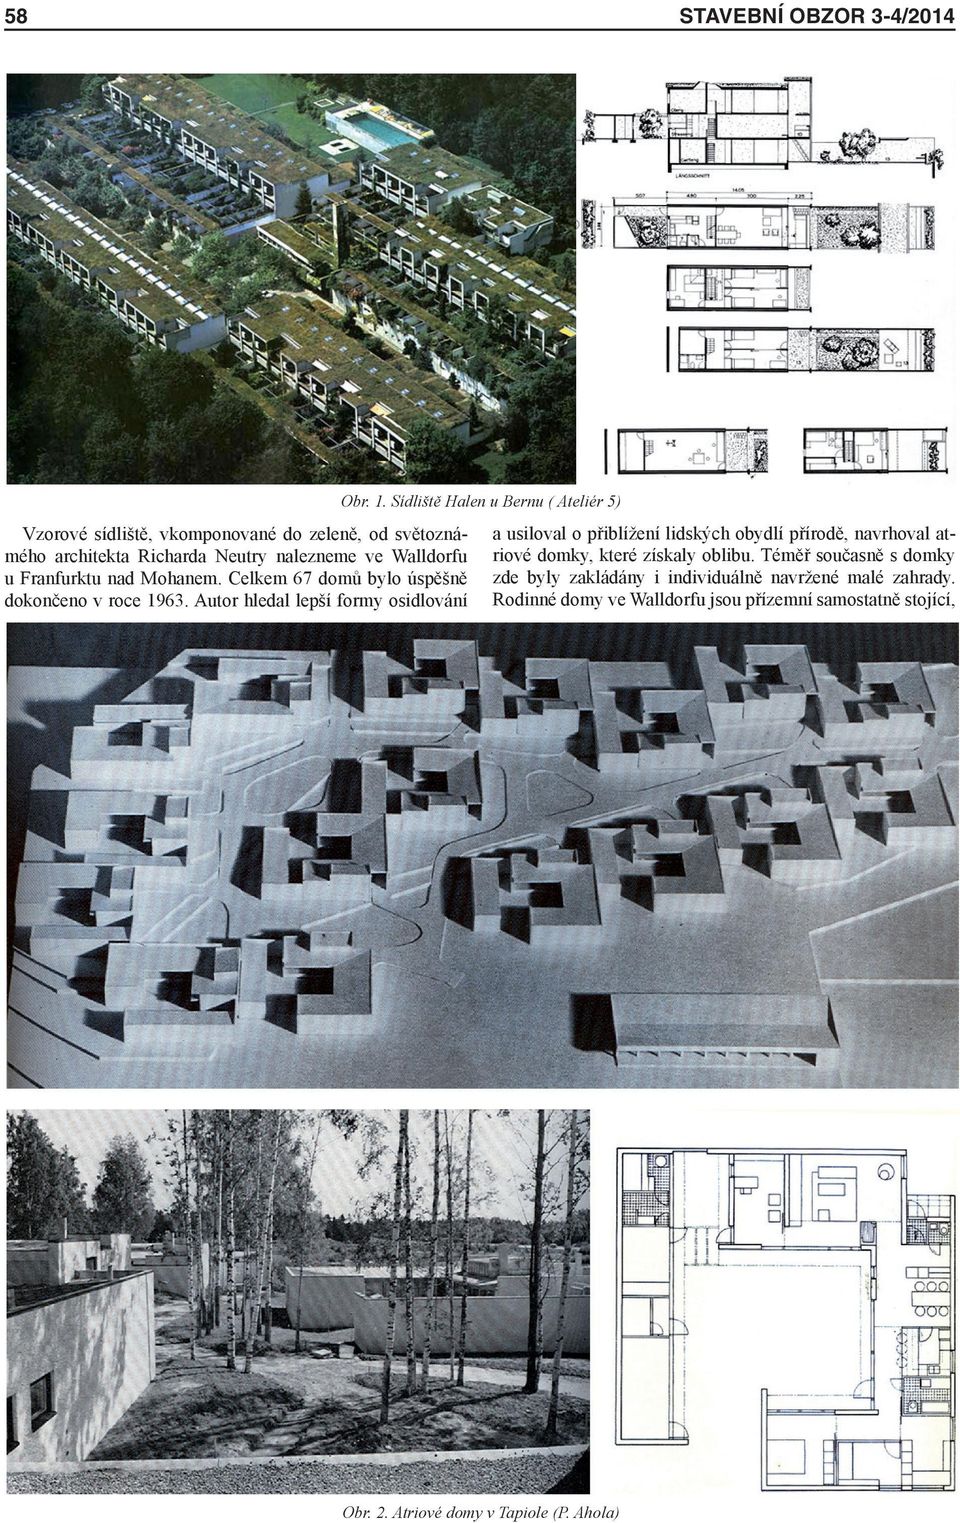 Walldorfu u Franfurktu nad Mohanem. Celkem 67 domů bylo úspěšně dokončeno v roce 1963.